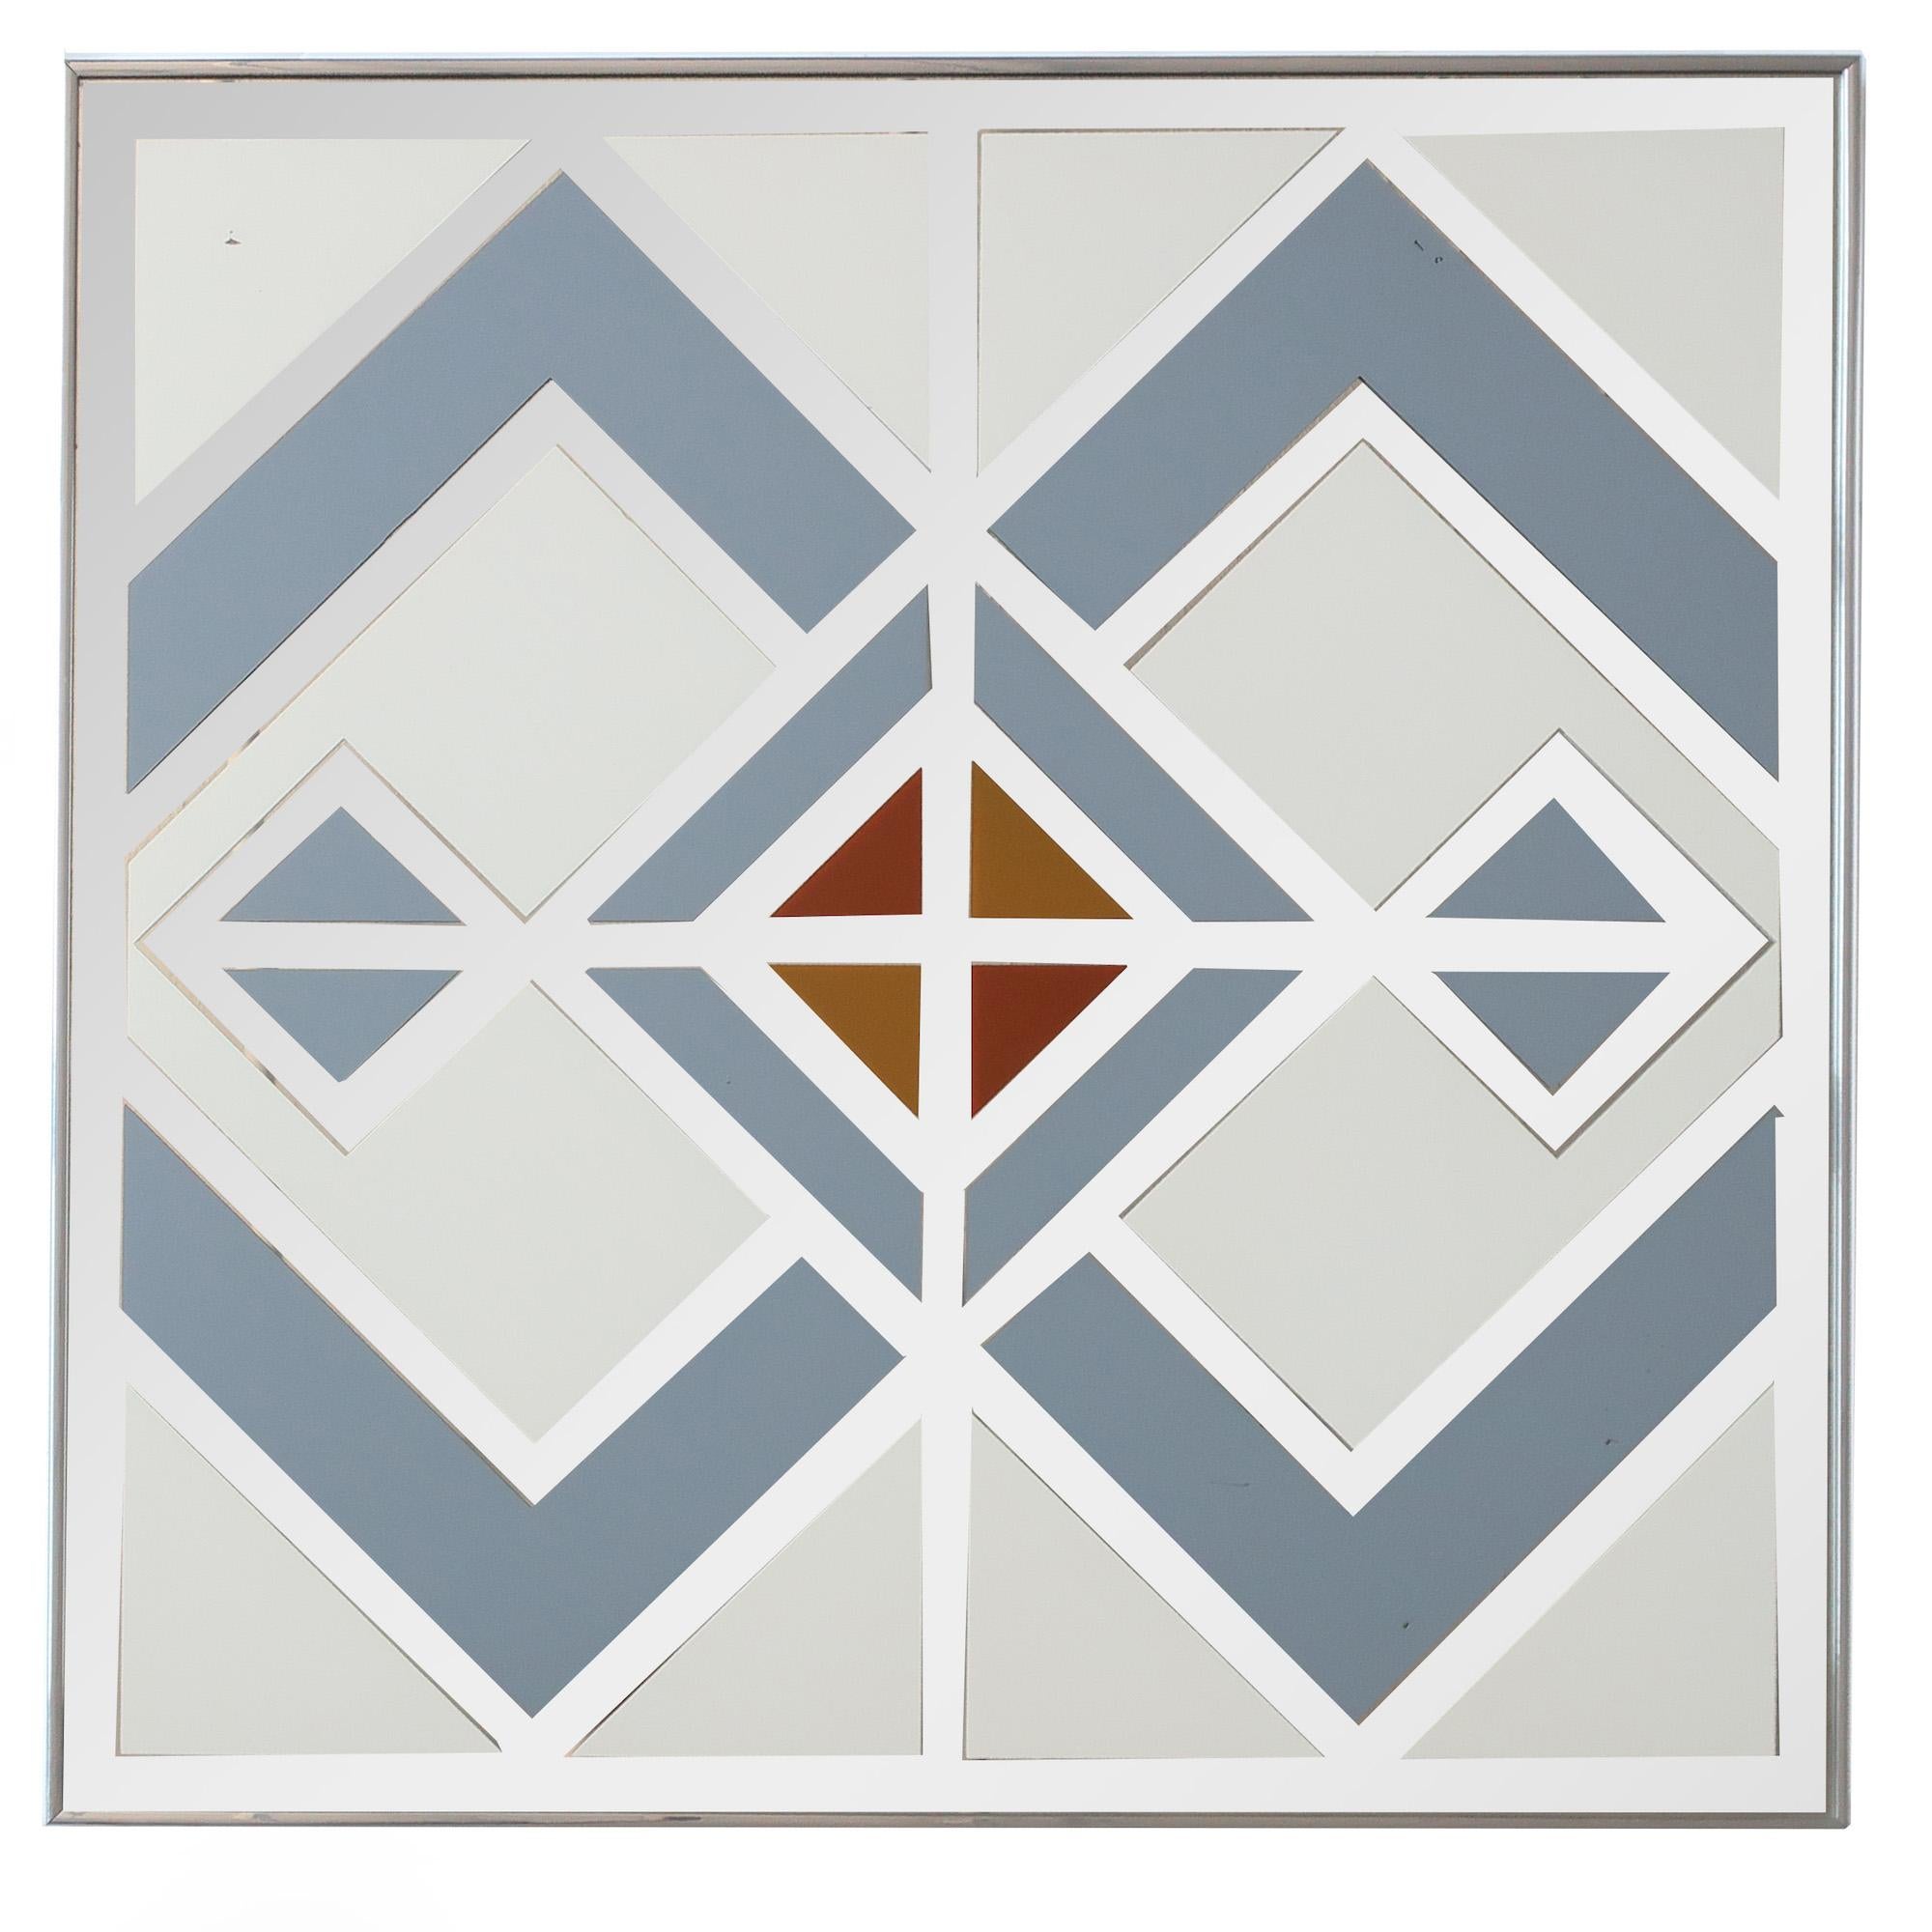 Dans le style du travail de Jim Rosloff pour Academy Arts et Turner Wall Accessories, ce miroir monumental de style moderne du milieu du siècle présente un motif géométrique blanc, gris, brun et orange peint à la main sur le miroir. Dans un cadre en